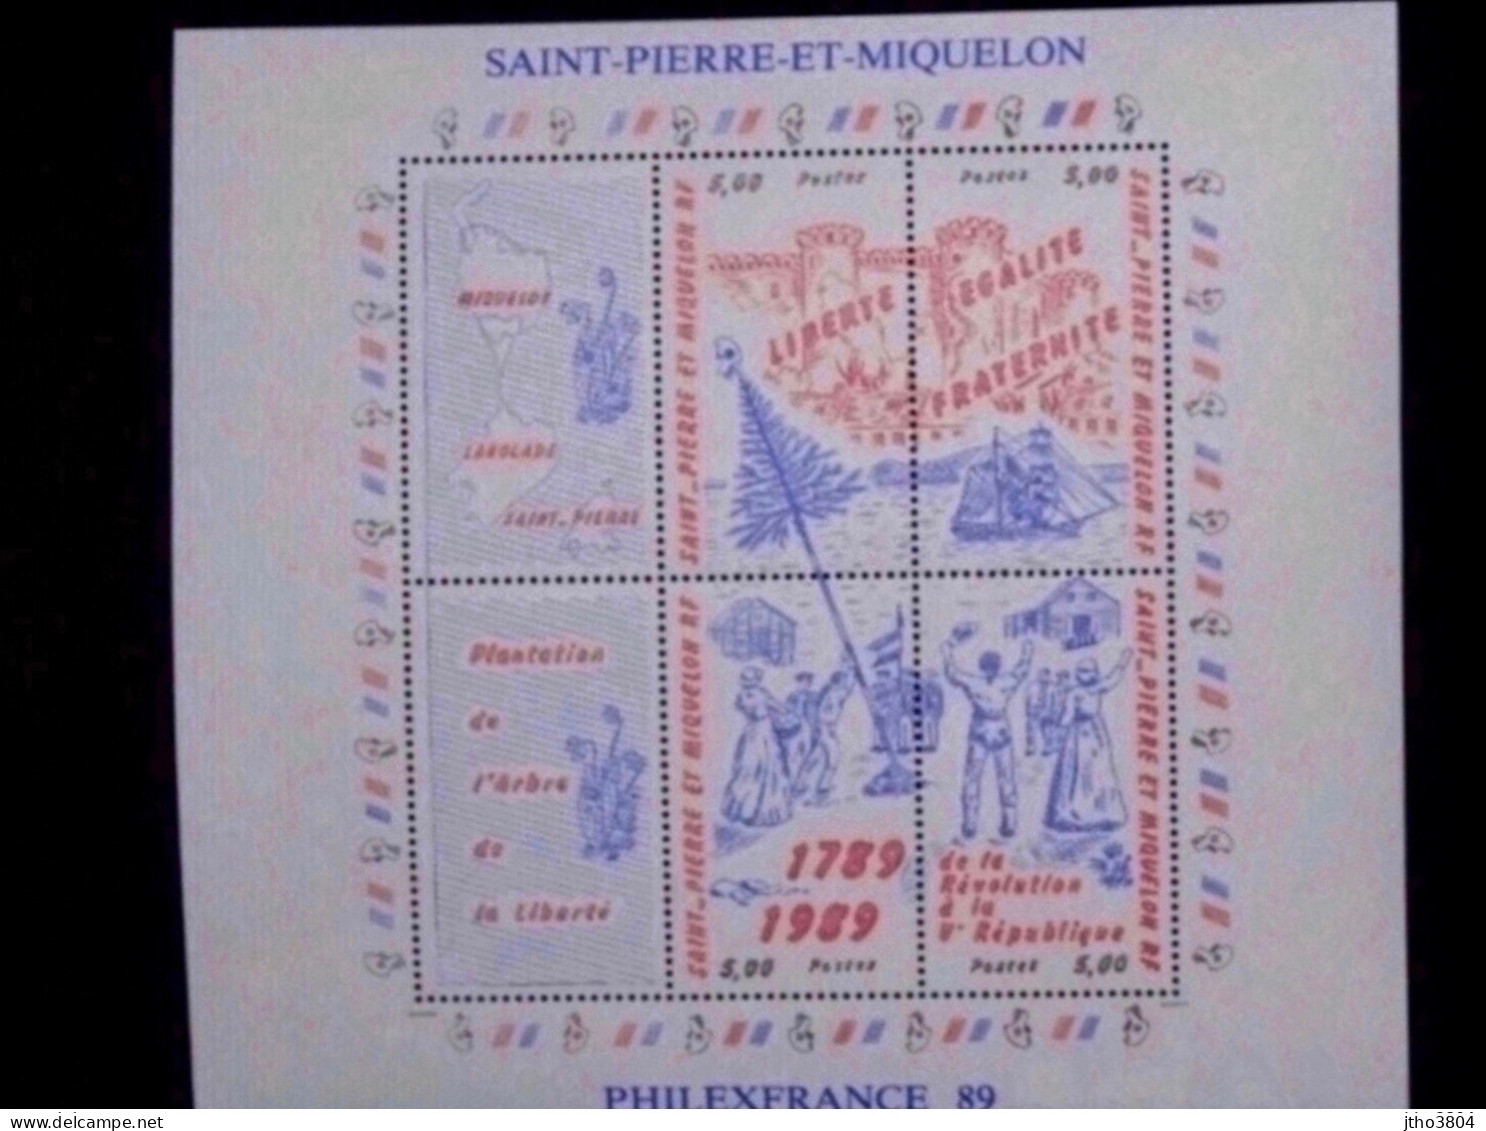 Saint Pierre Et Miquelon -Philexfrance 89 - Bloc 3 Révolution Française - BF3 - Nuovi